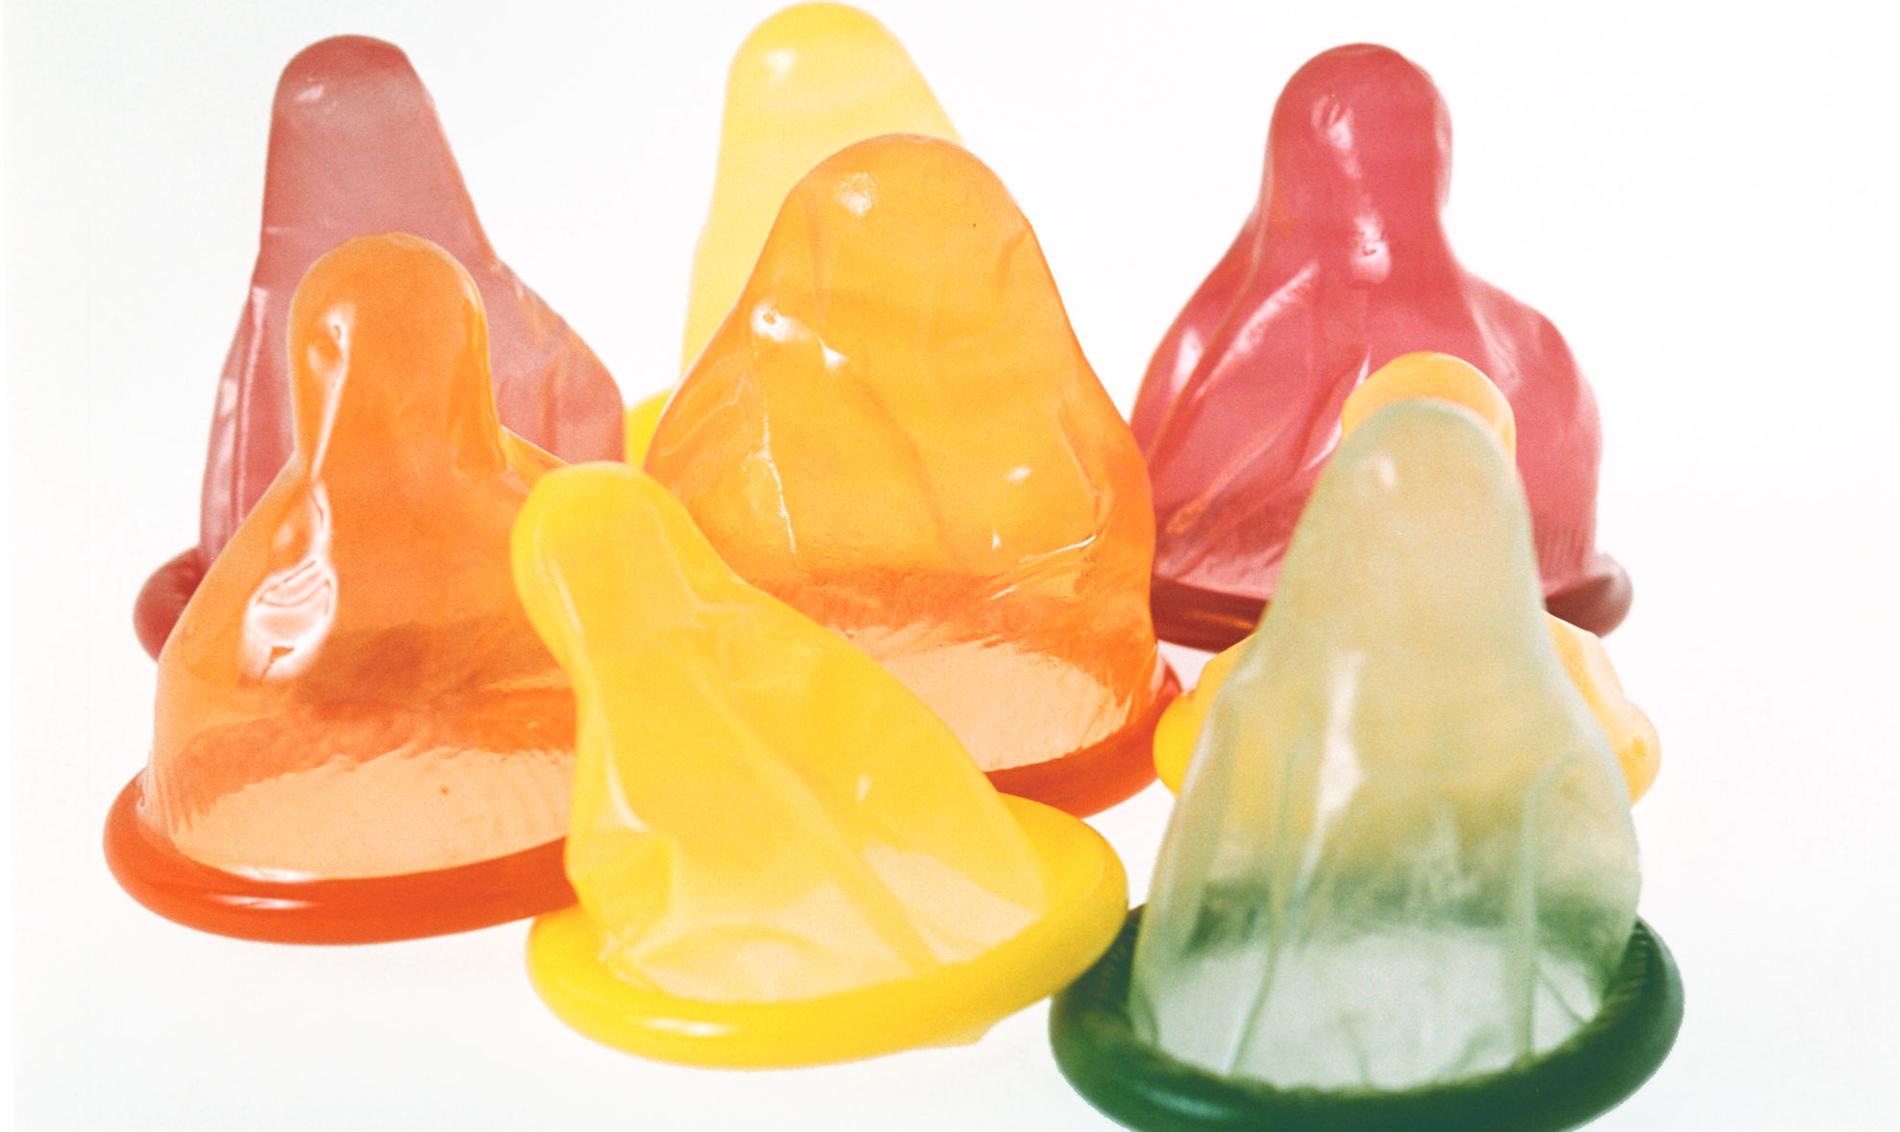 Bästa skyddet Kondom är det enda preventivmedel som skyddar mot hiv. Genom att förbättra informationen om säkert sex kan vi slippa lagen om informationsplikt för personer med hiv-diagnos.räddnings